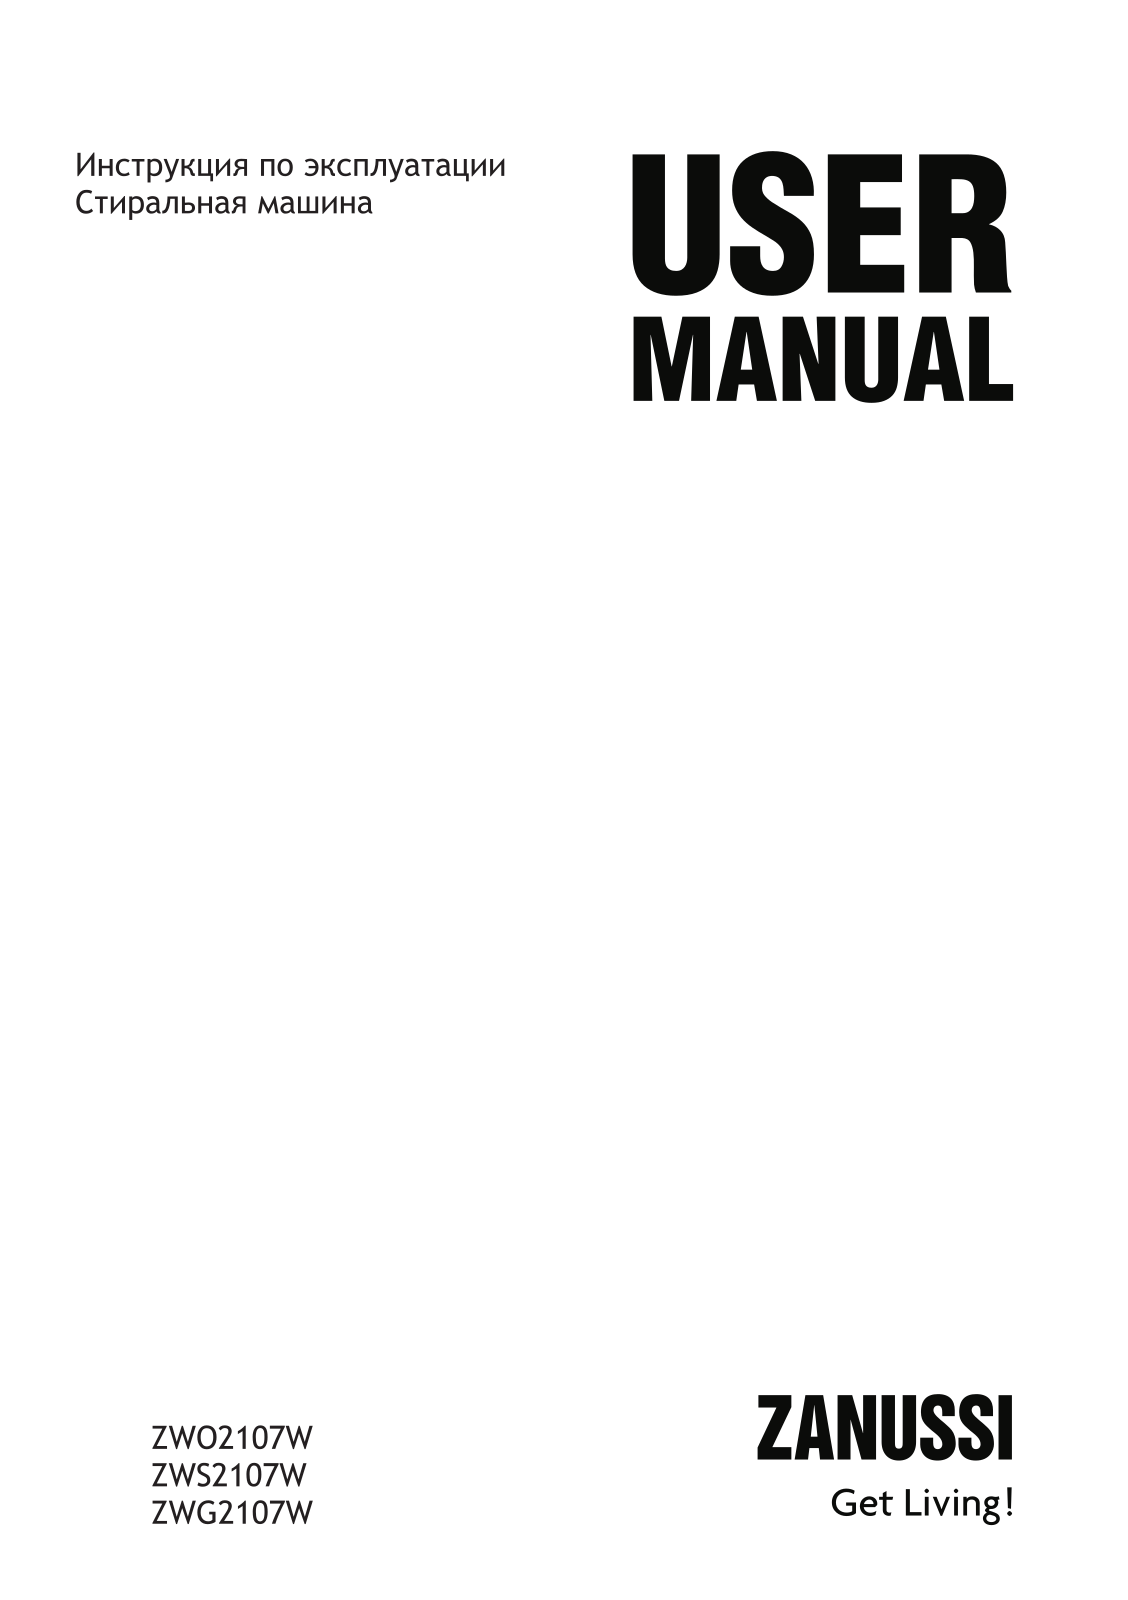 Zanussi ZWG 2107 W, ZWO 2107 W, ZWS 2107 W User manual